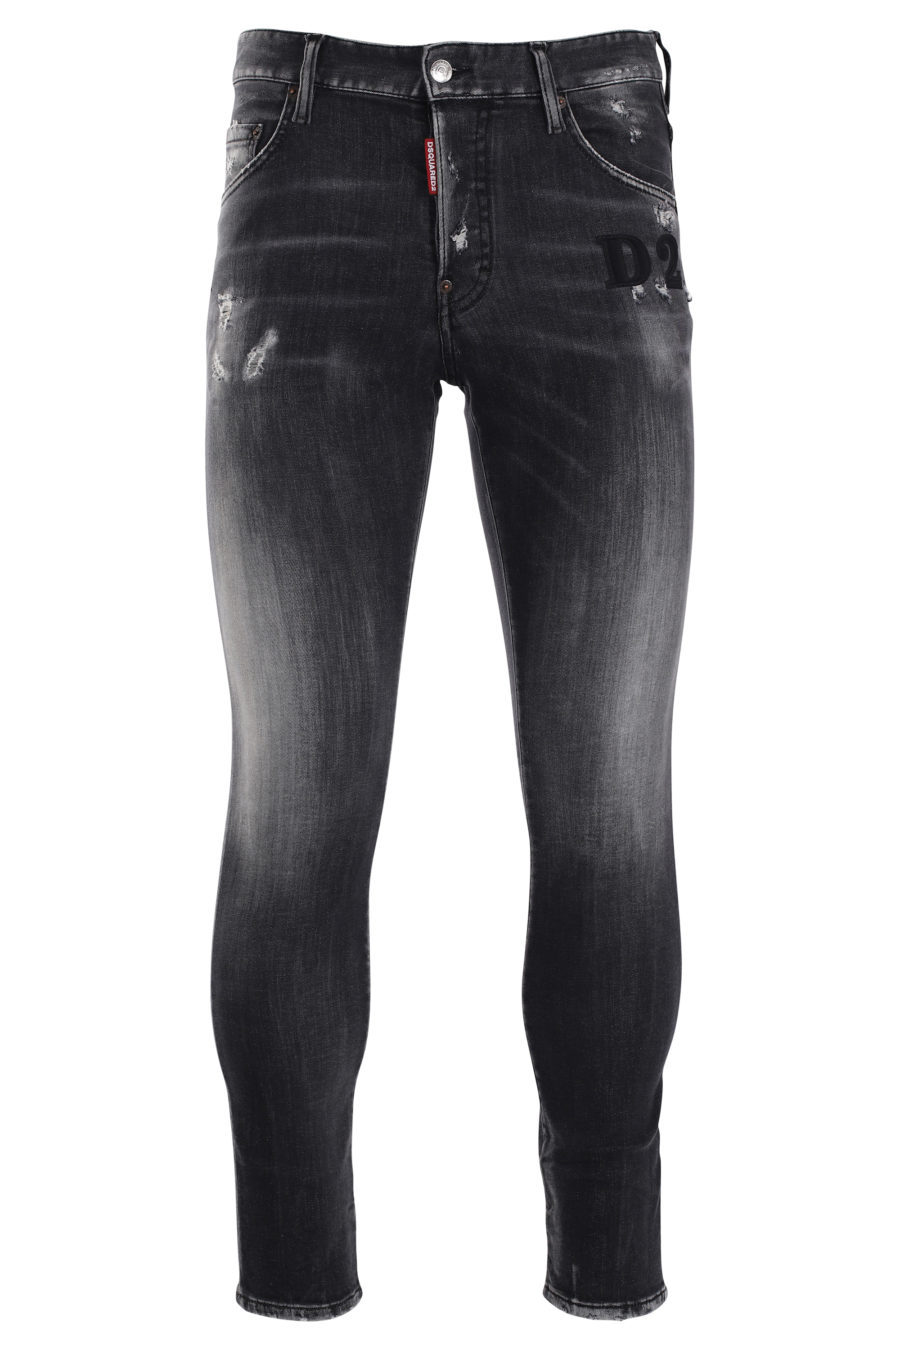 Pantalon patineur en denim avec jean usé noir et logo "D2" noir - IMG 9986